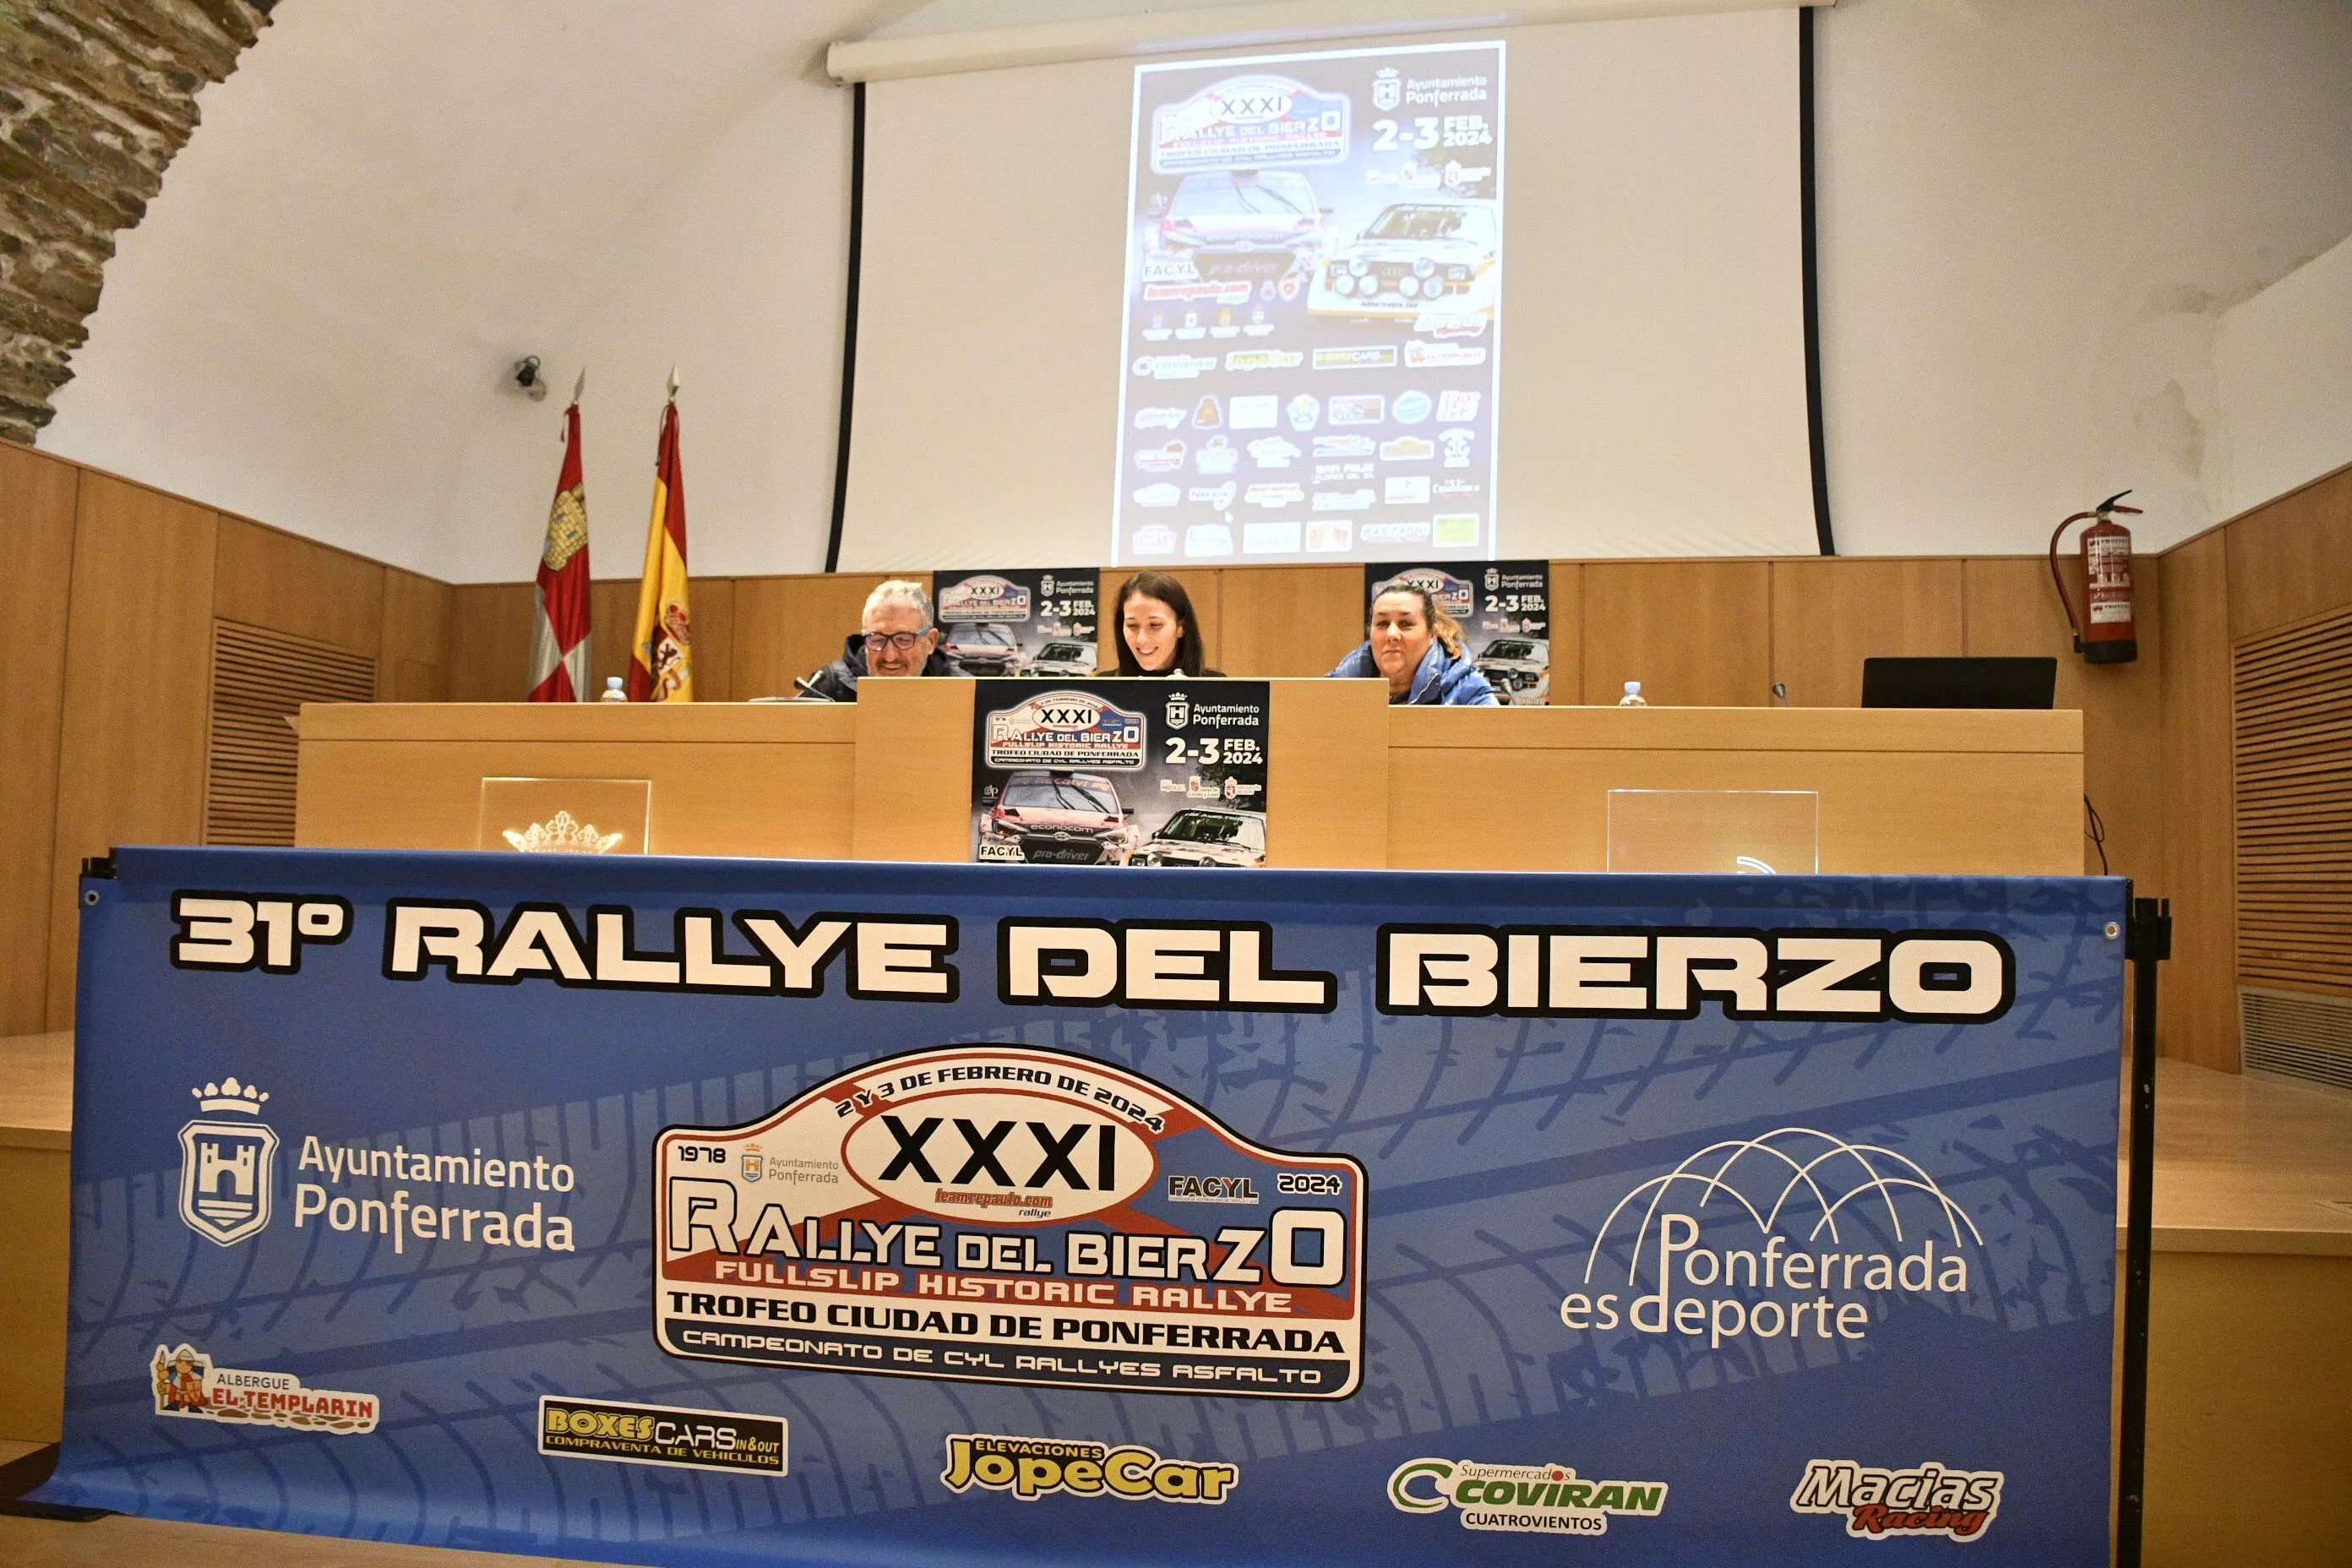 El 31º Rallye del Bierzo 'Trofeo Ciudad de Ponferrada' pisa el acelerador con 50 equipos inscritos